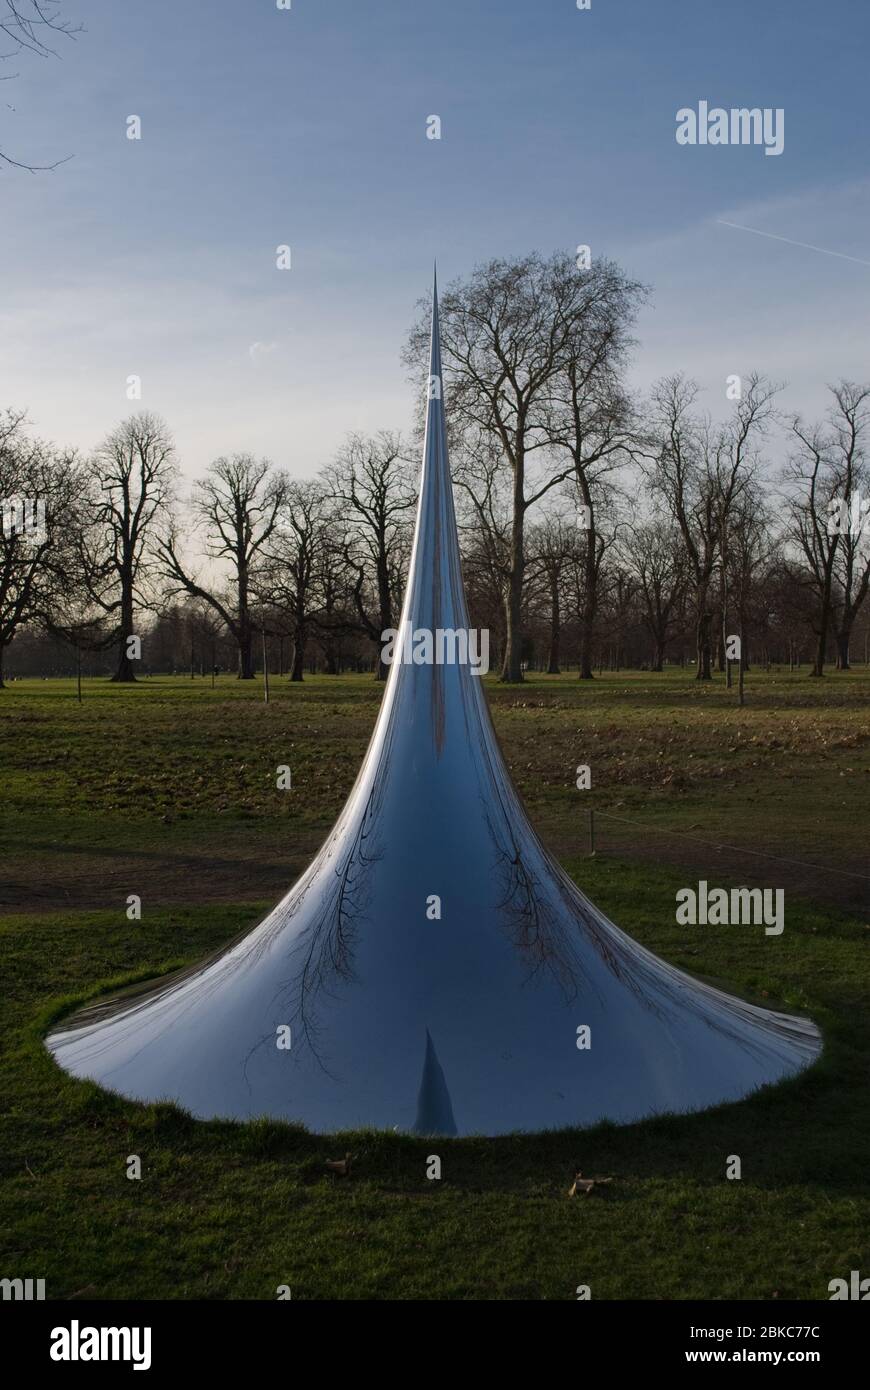 Sky Mirror non objet Spire tourner le monde à l'envers exposition Serpentine Gallery Kensington Gardens, Londres W2 Anish Kapoor Sculptor Banque D'Images